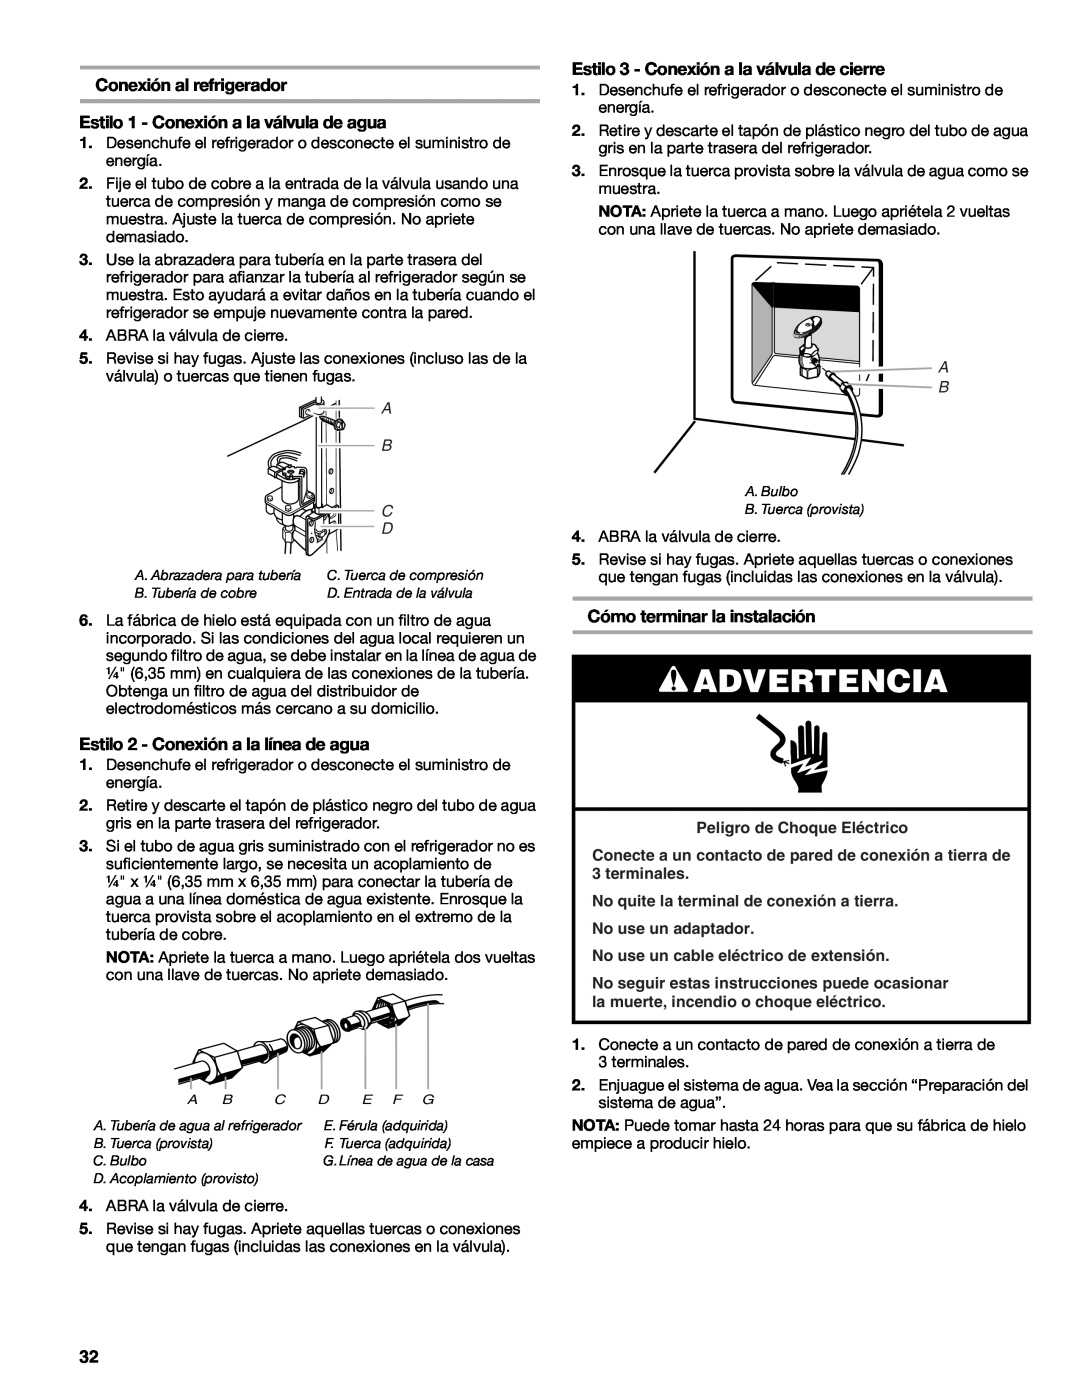 Sears T1KB2/T1RFKB2 manual Conexión al refrigerador, Estilo 1 - Conexión a la válvula de agua, Cómo terminar la instalación 